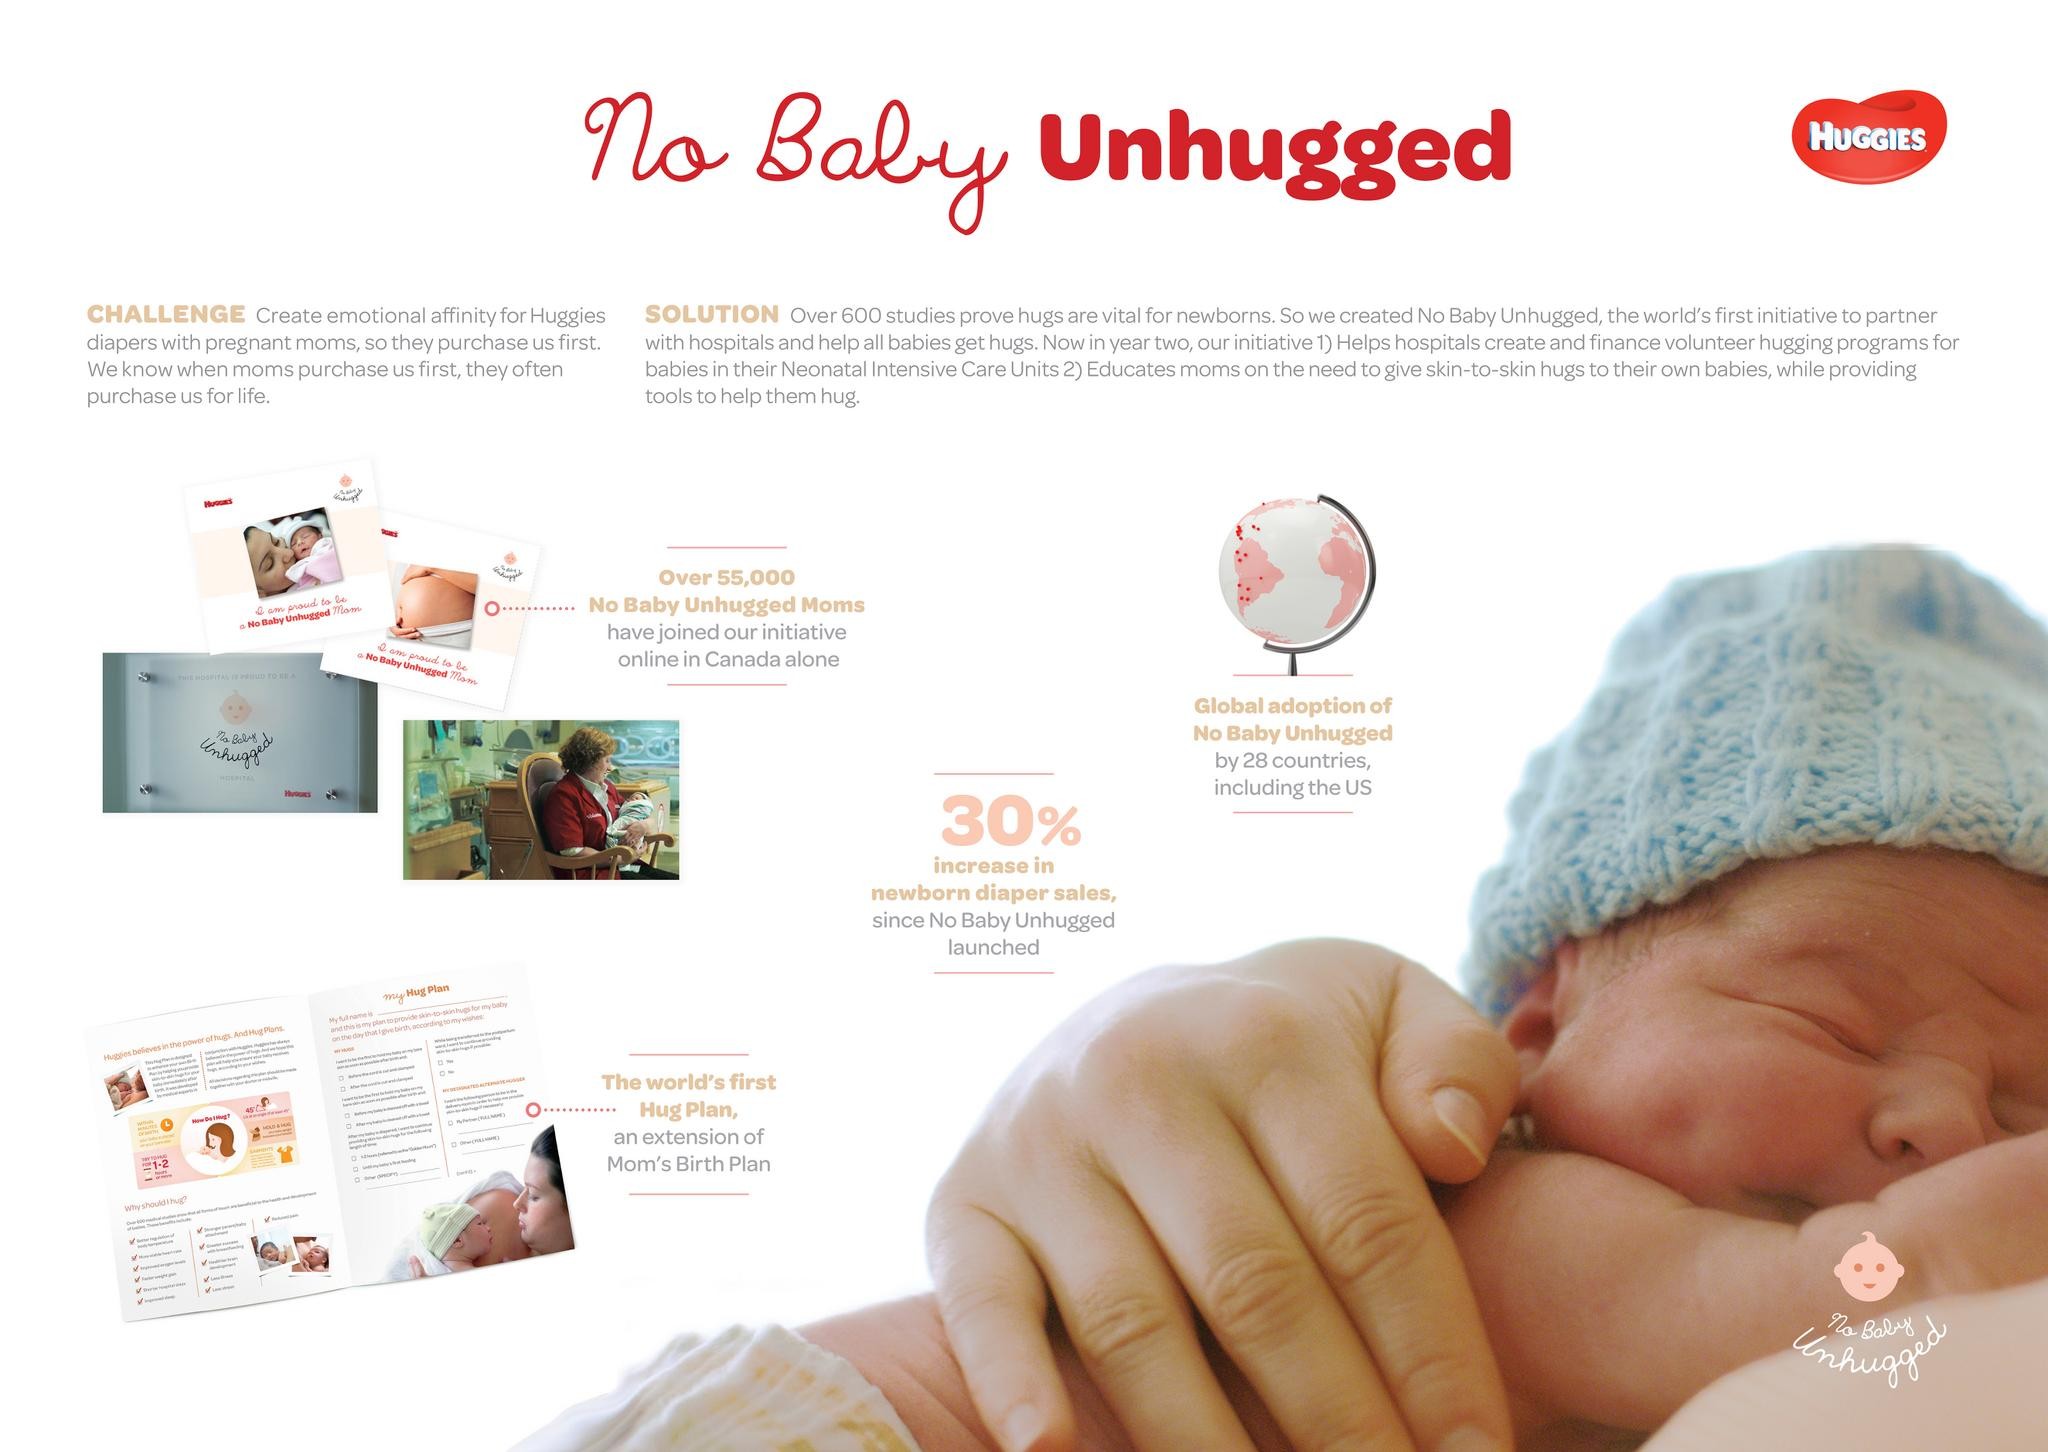 NO BABY UNHUGGED